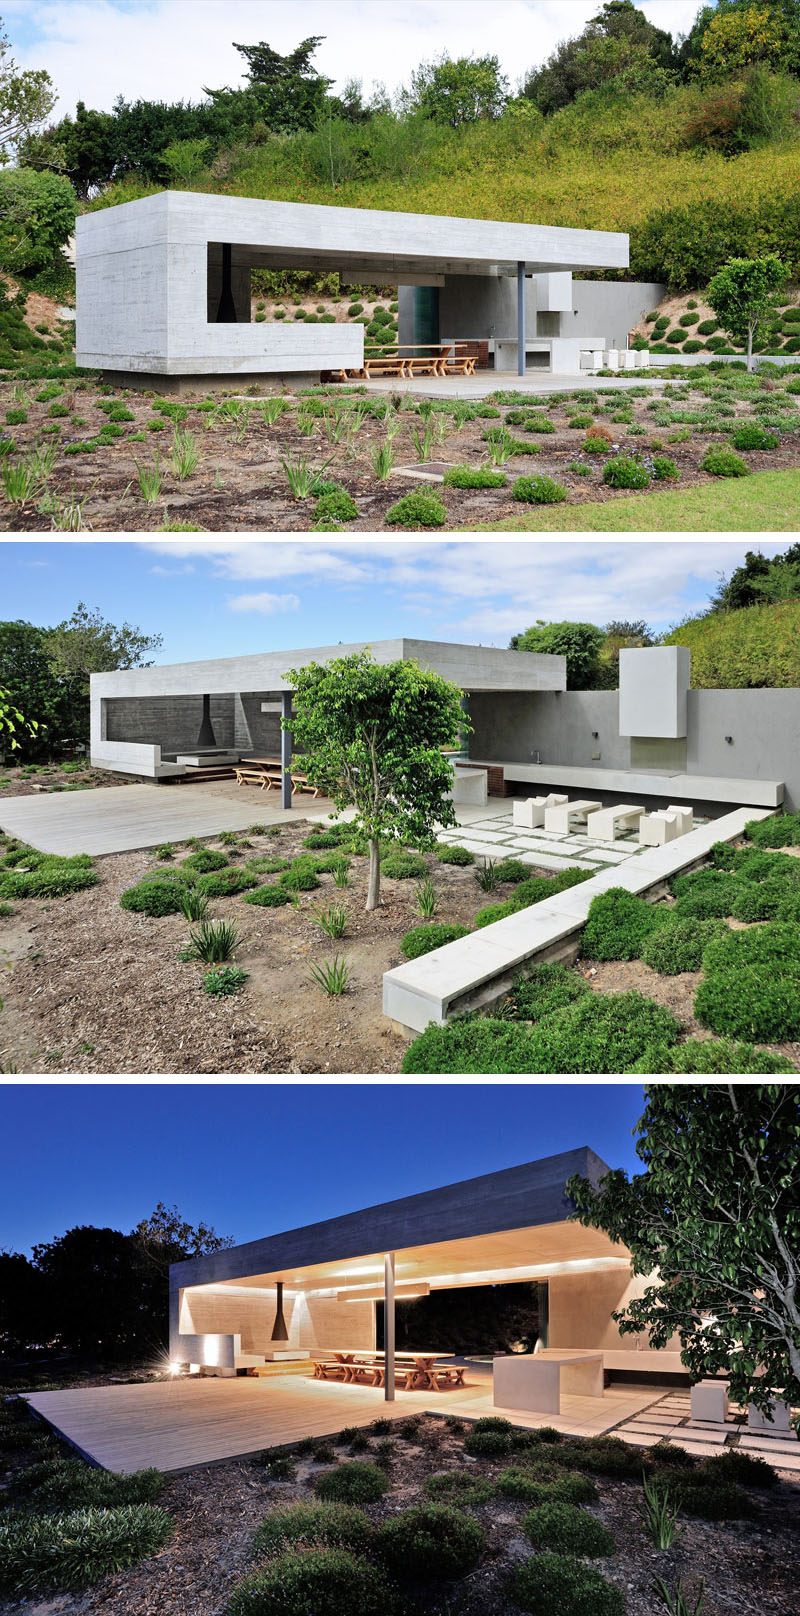 Этот бетонный садовый павильон был спроектирован с добавлением нескольких зон для развлечений